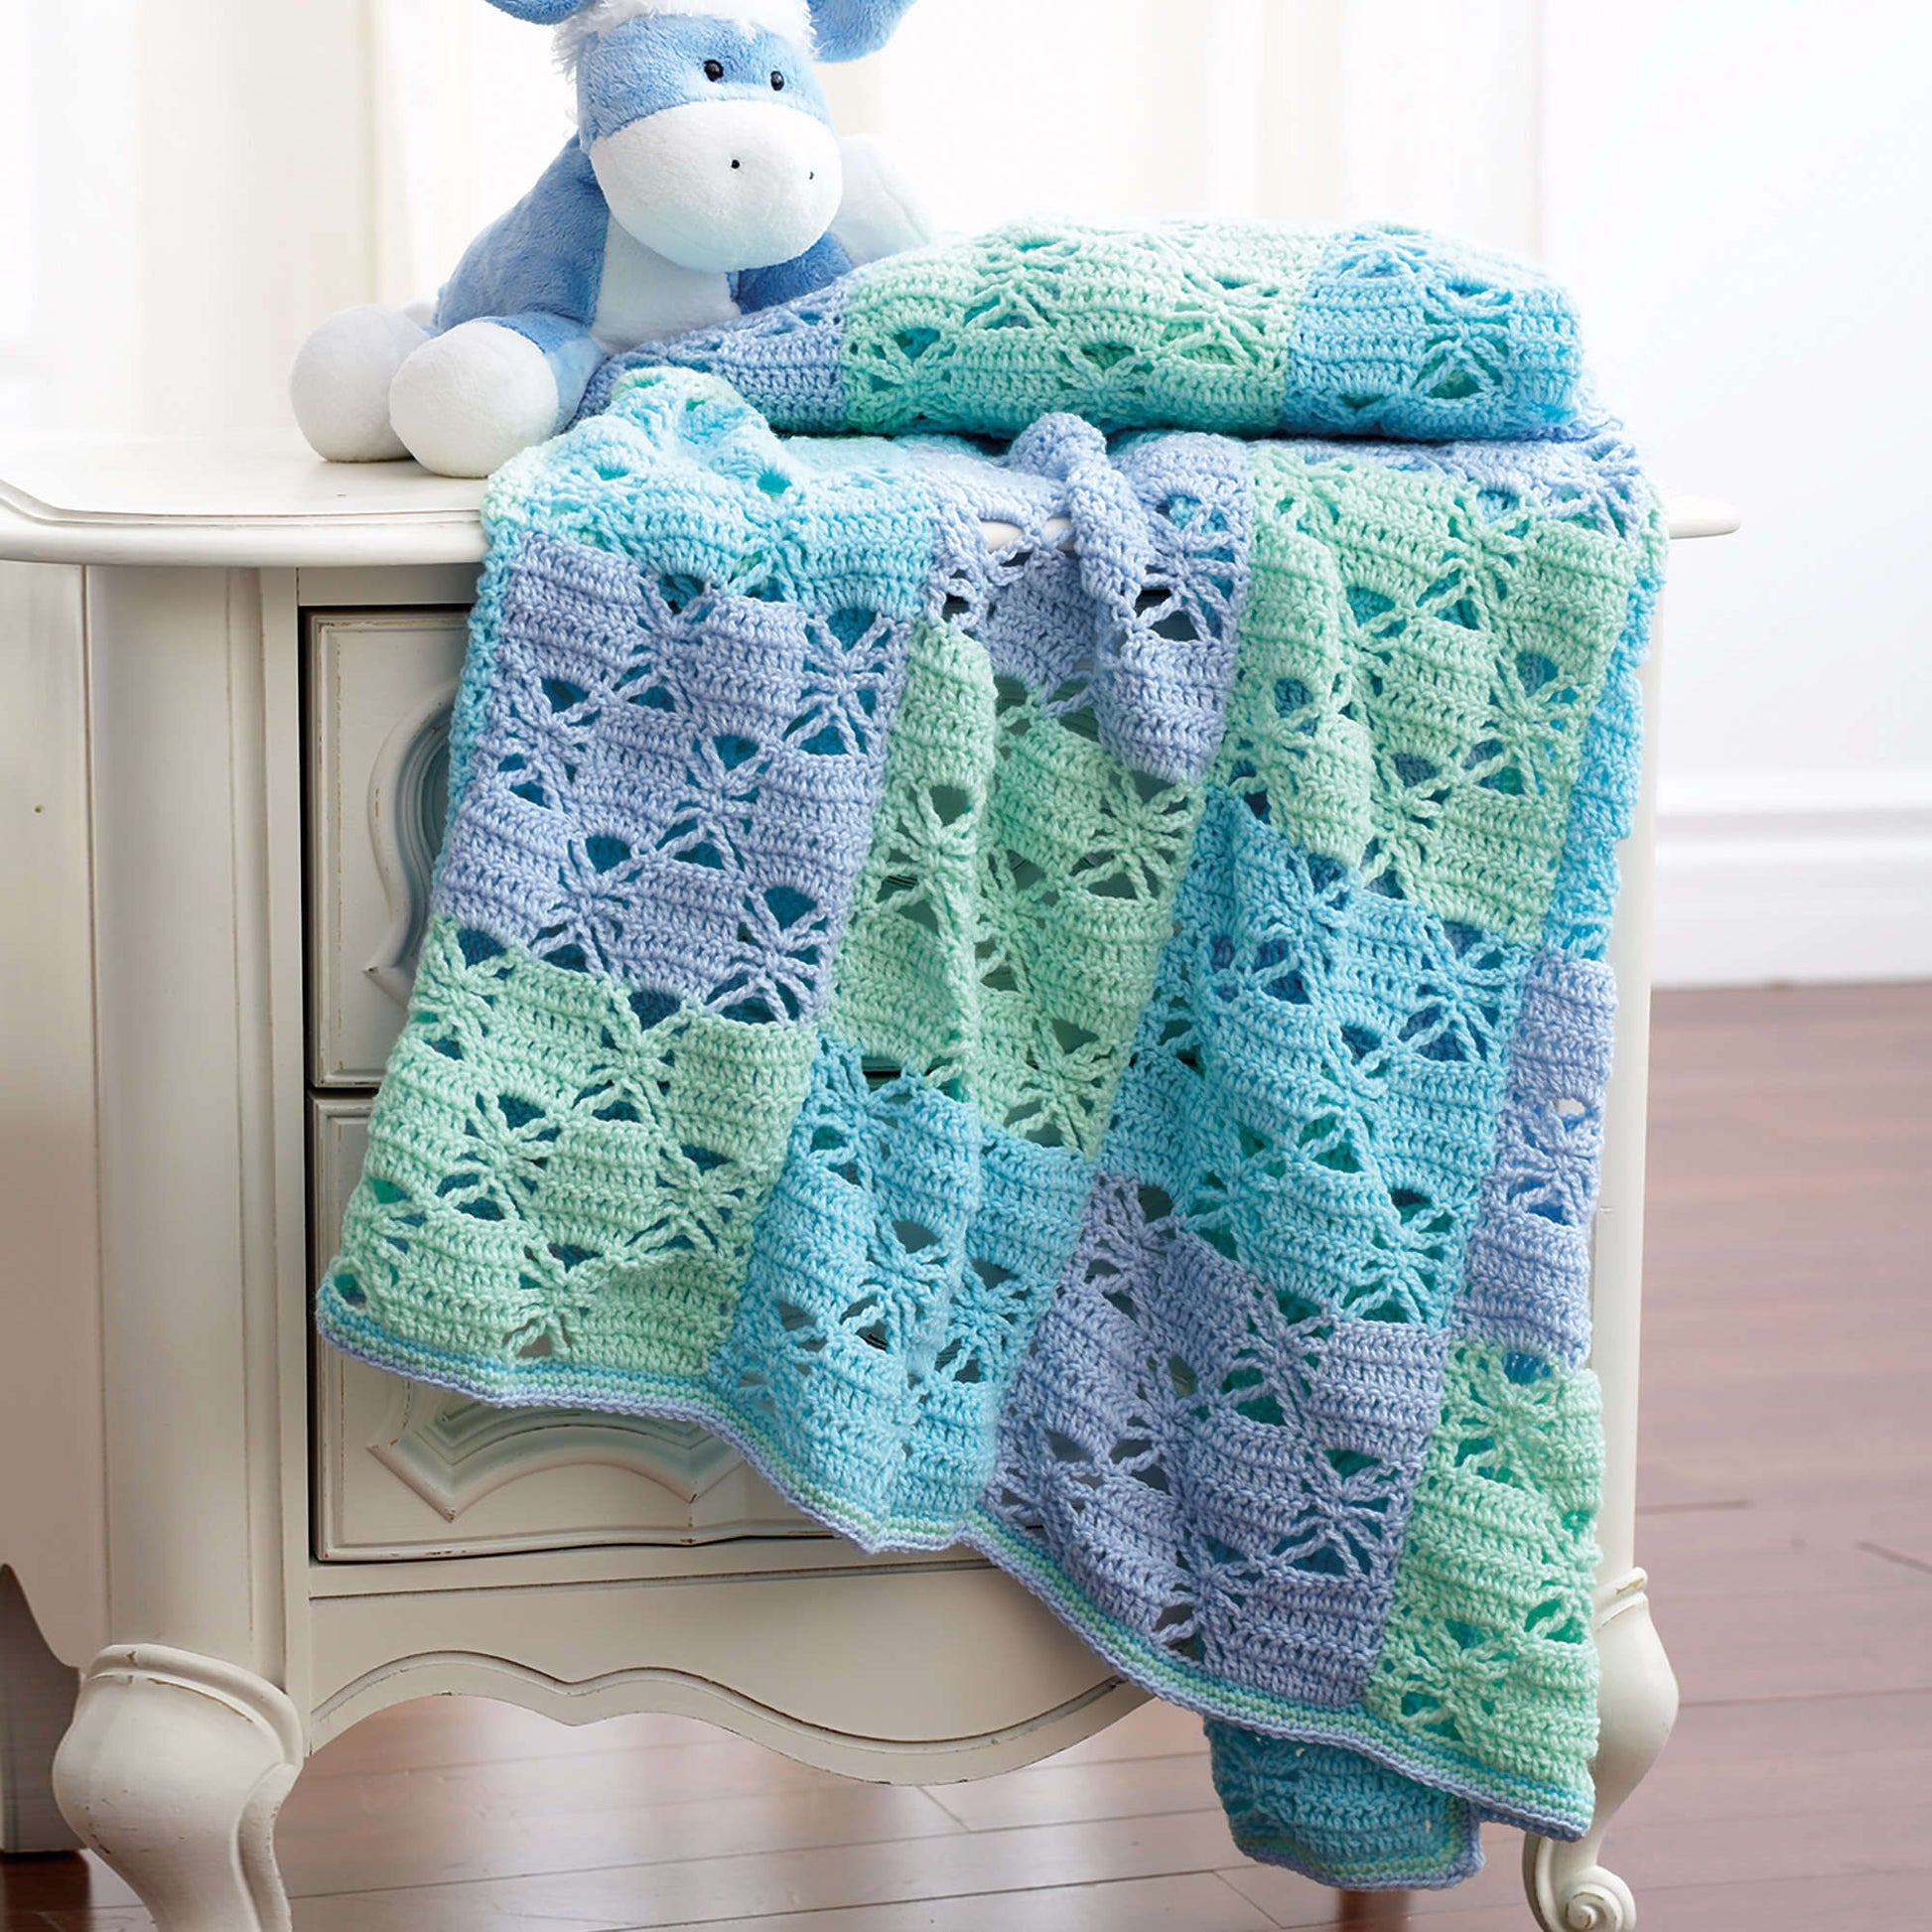 Bernat Blanket Yarn Crochet Pattern